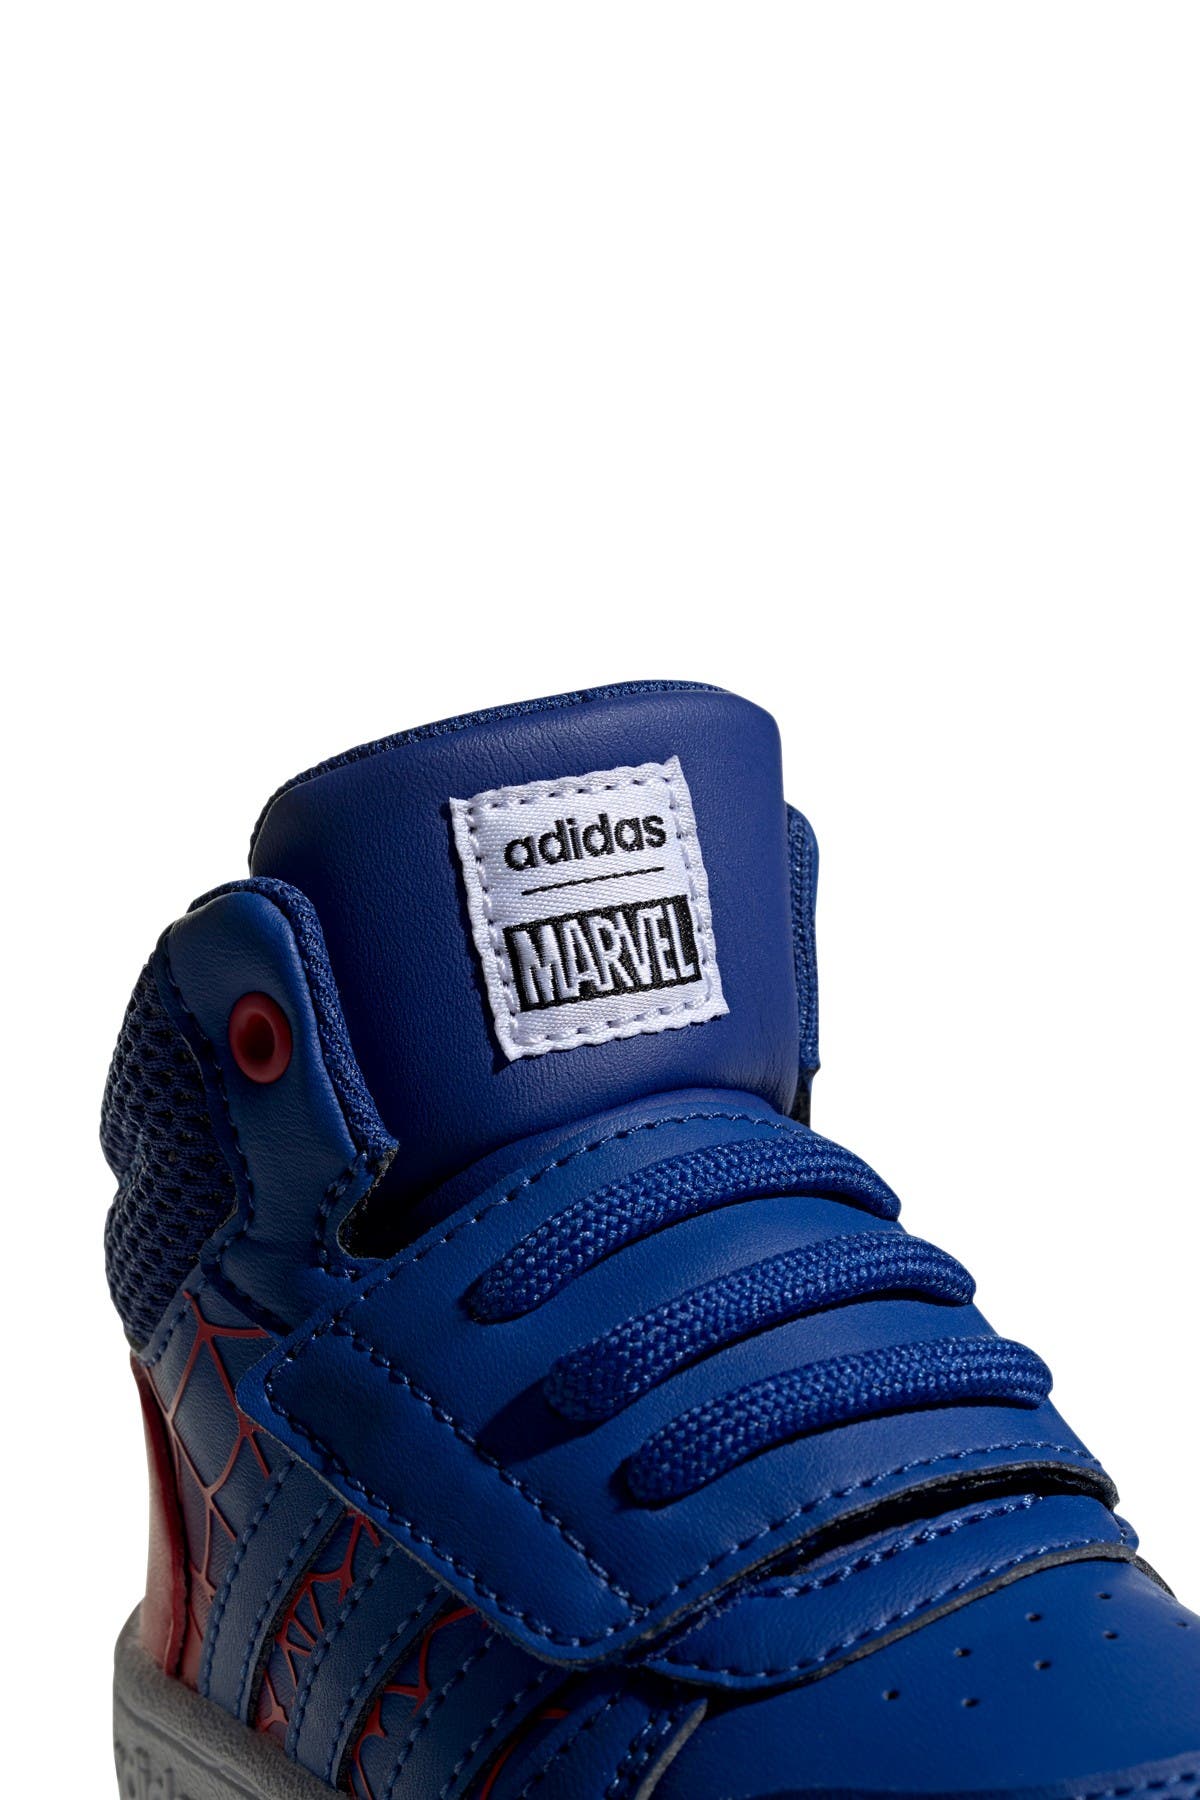 adidas spiderman sneakers